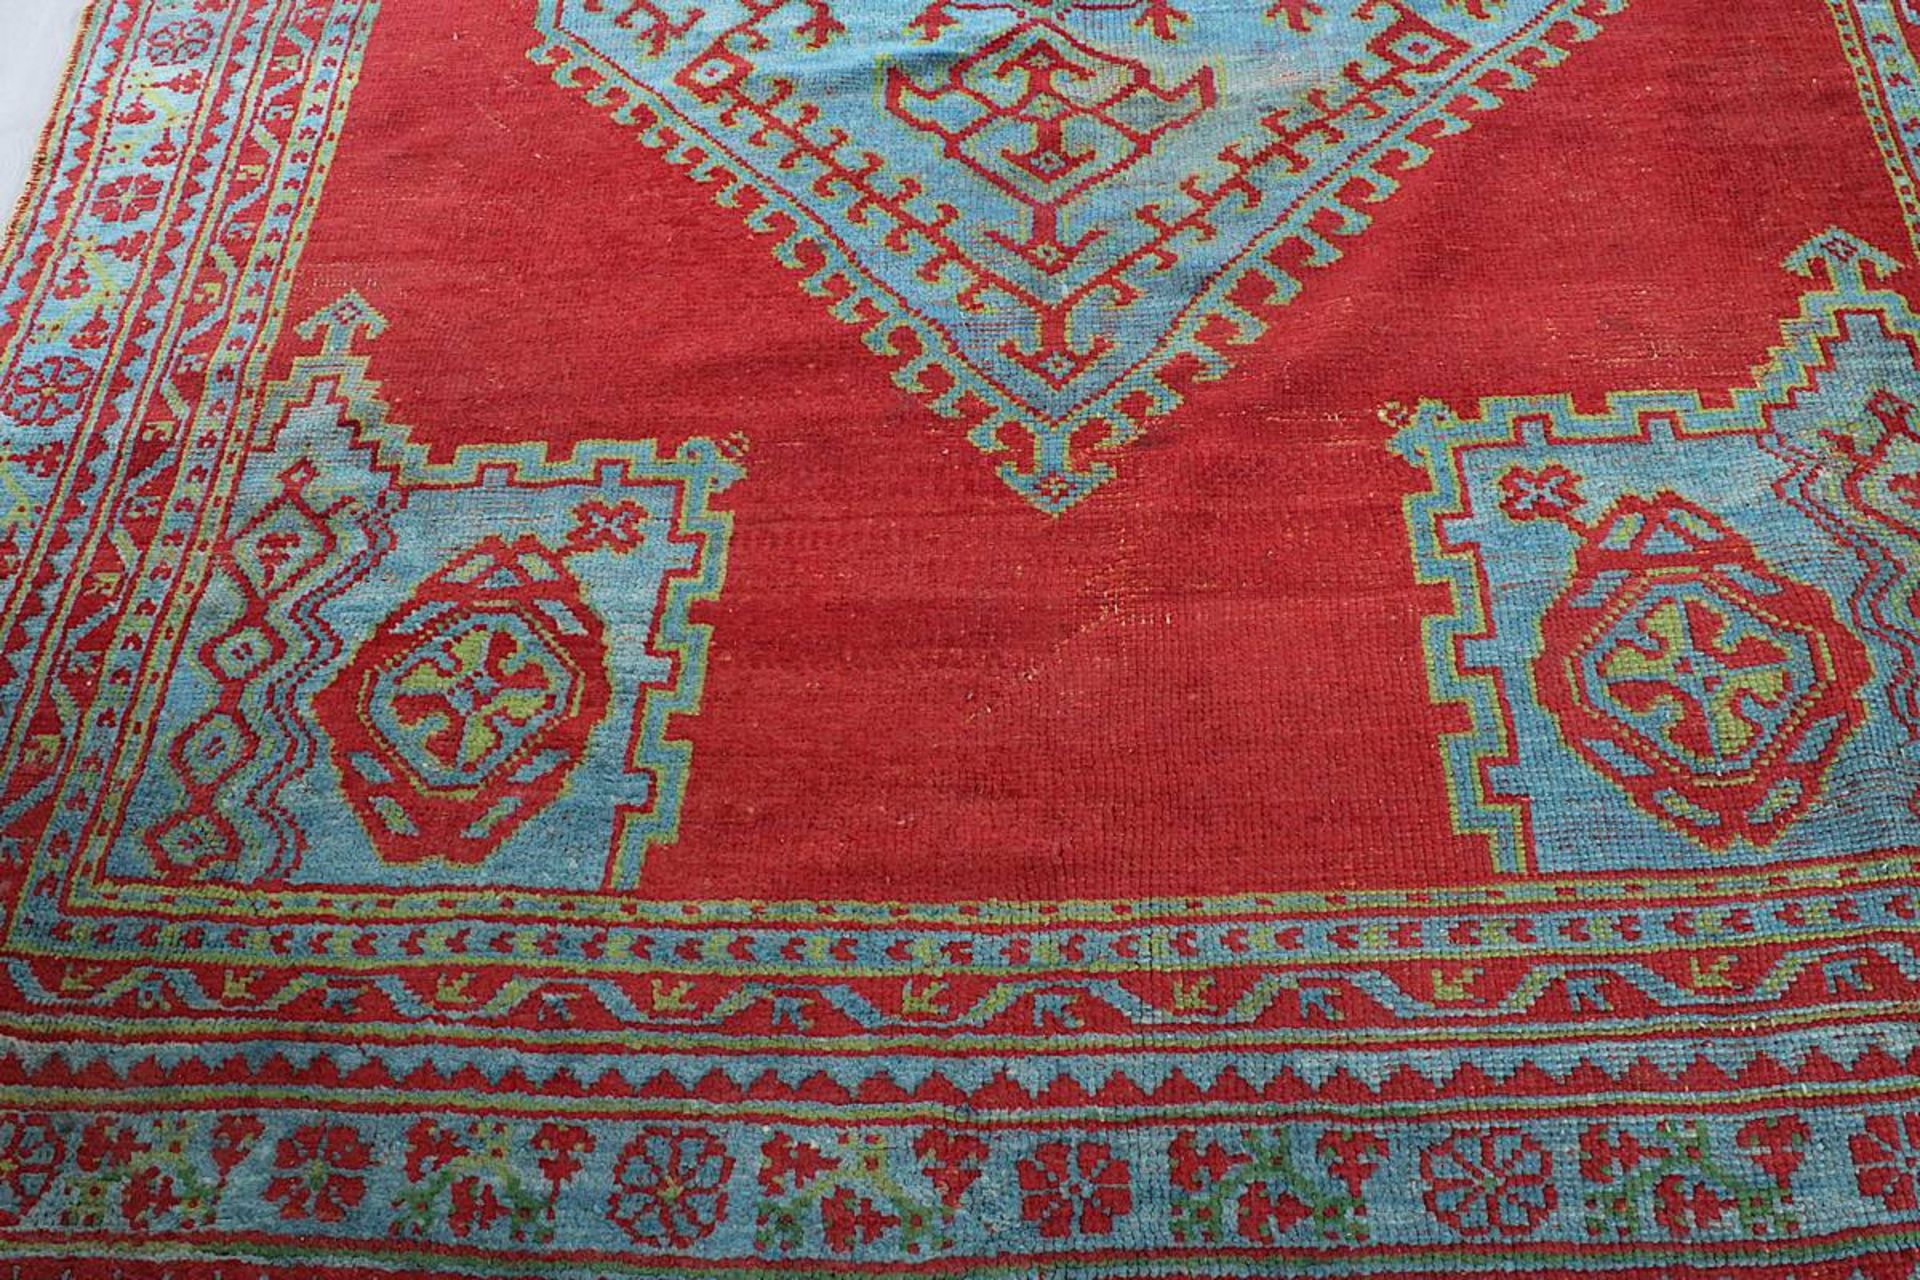 Großer Teppich, Marokko oder Türkei Mitte - 2. H. 20. Jh., roter Fond, mit türkis abgesetztem - Image 3 of 11